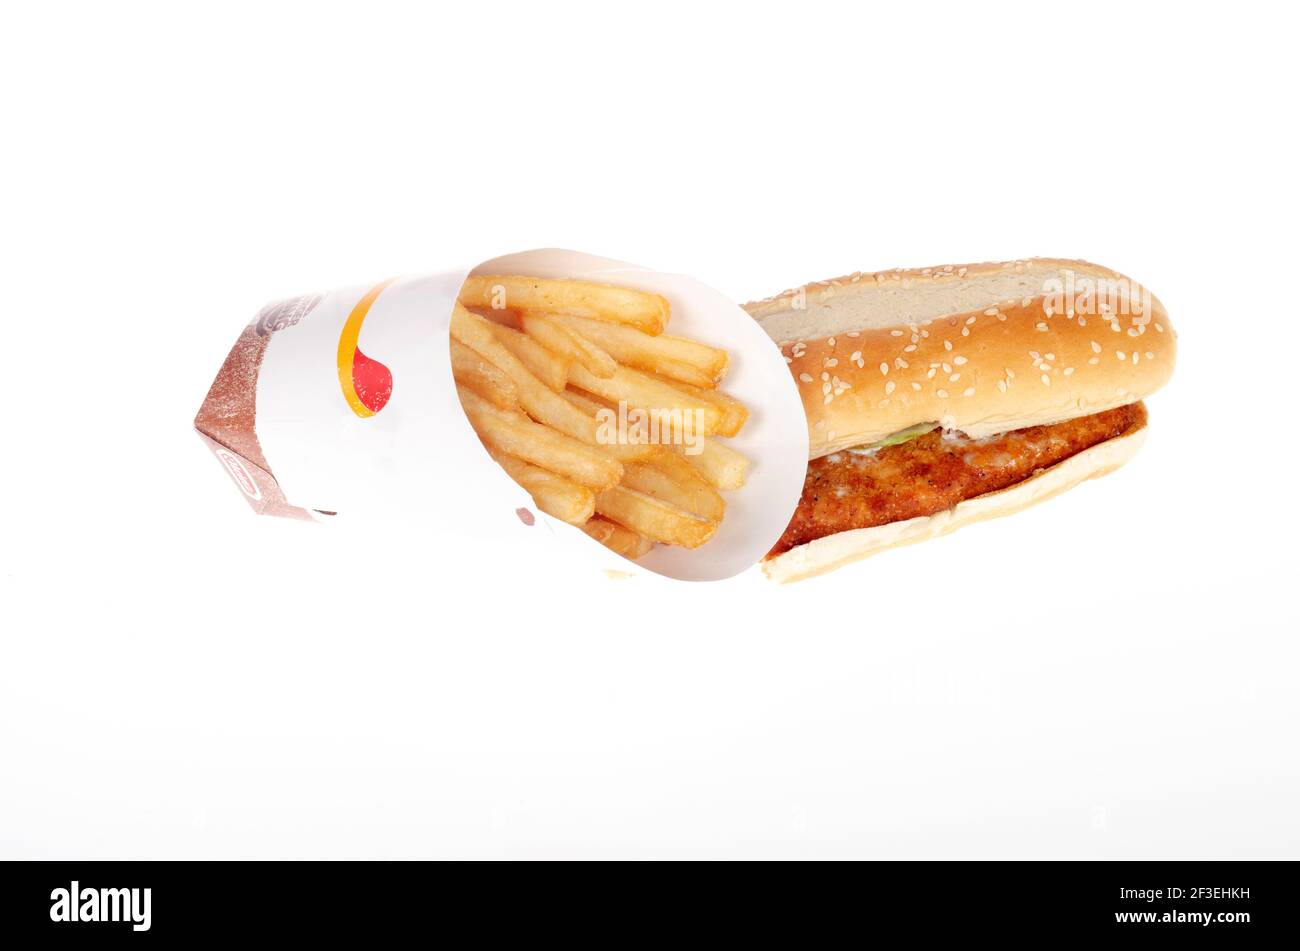 Burger King, panino di pollo originale con patatine fritte Foto Stock